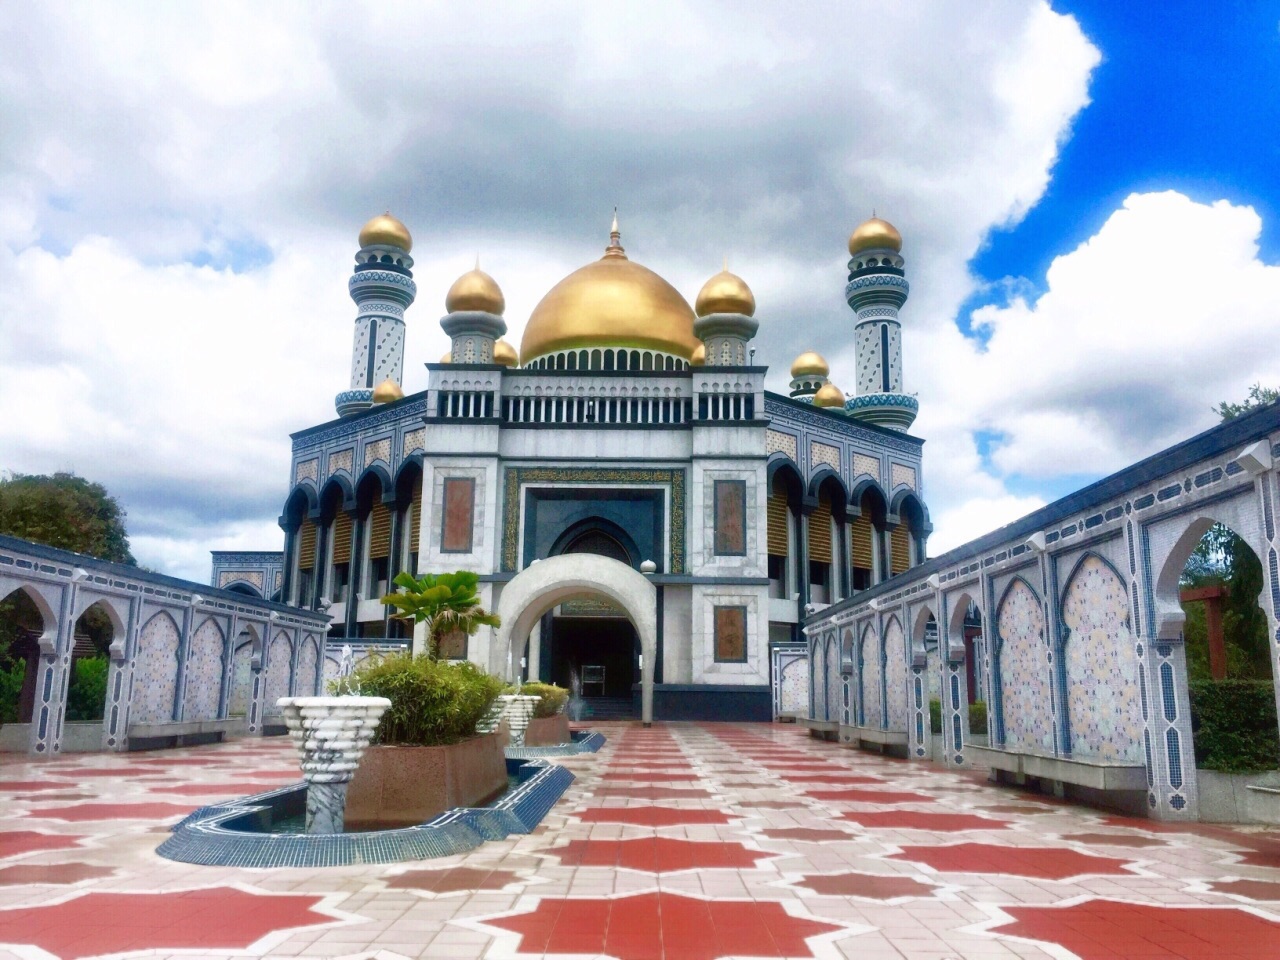 哈桑纳尔清真寺，在斯里巴加湾市，是文莱最大的清真寺，是文莱苏丹个人捐资建造的。共有29个金拱顶，四座